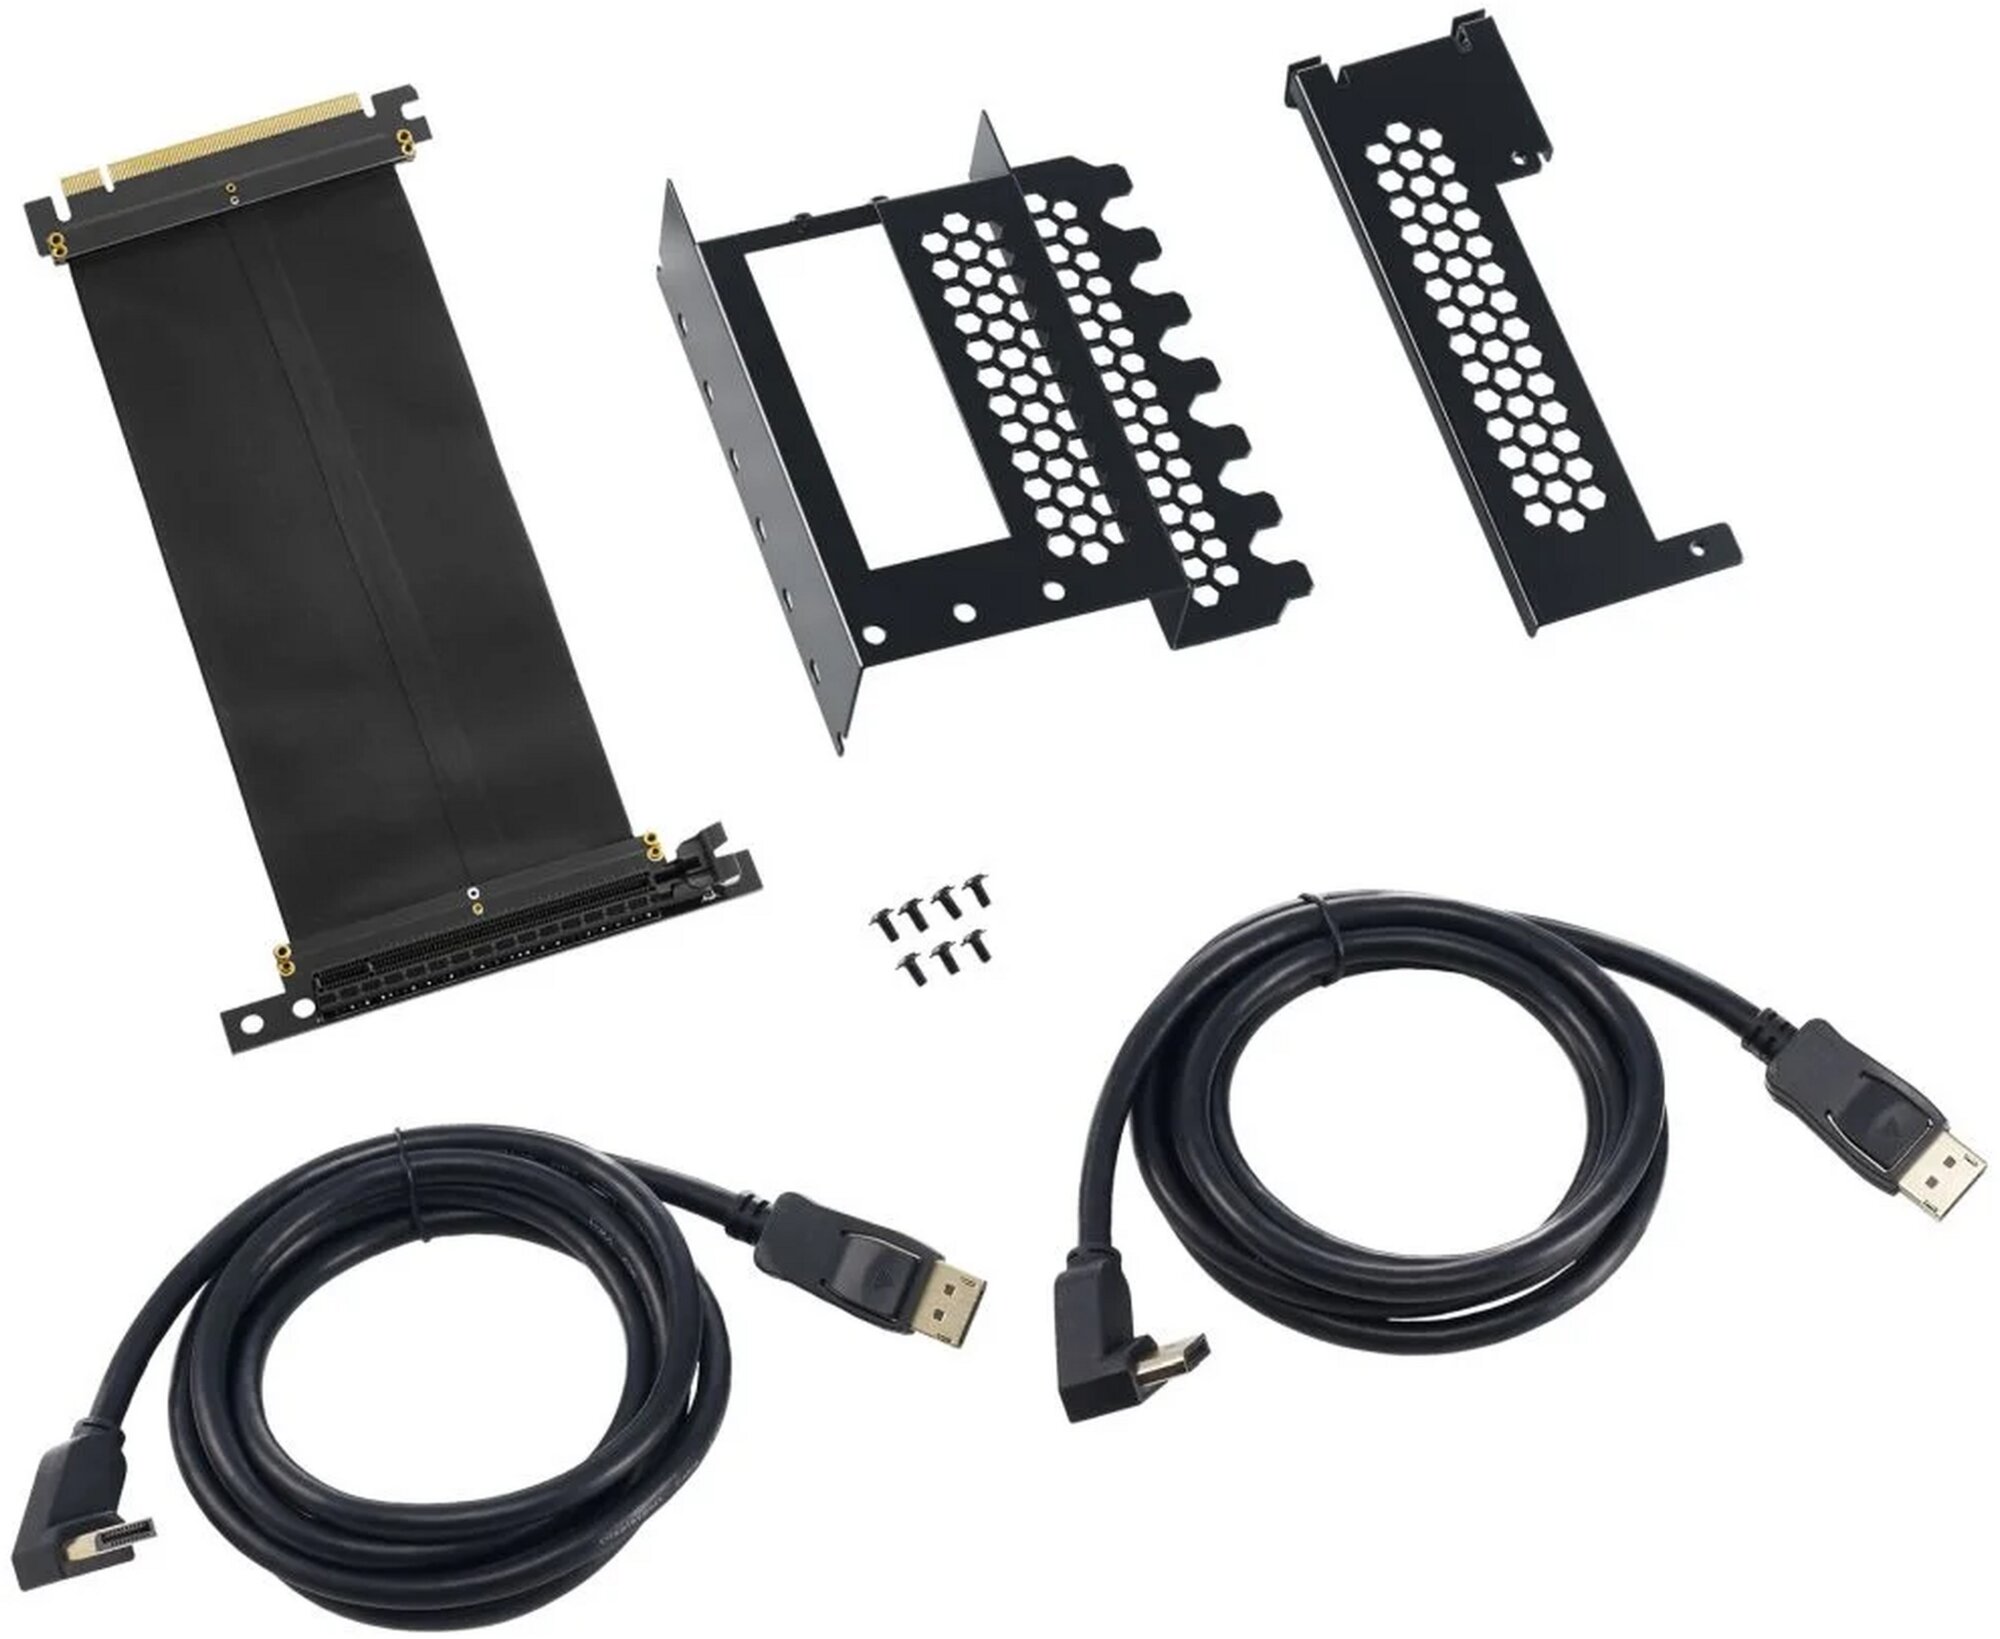 CableMod vertikale vertikální držák grafické karty s PCIe x16 Riser Cable, 2x DisplayPort - černá - CM-VPB-2DK-R